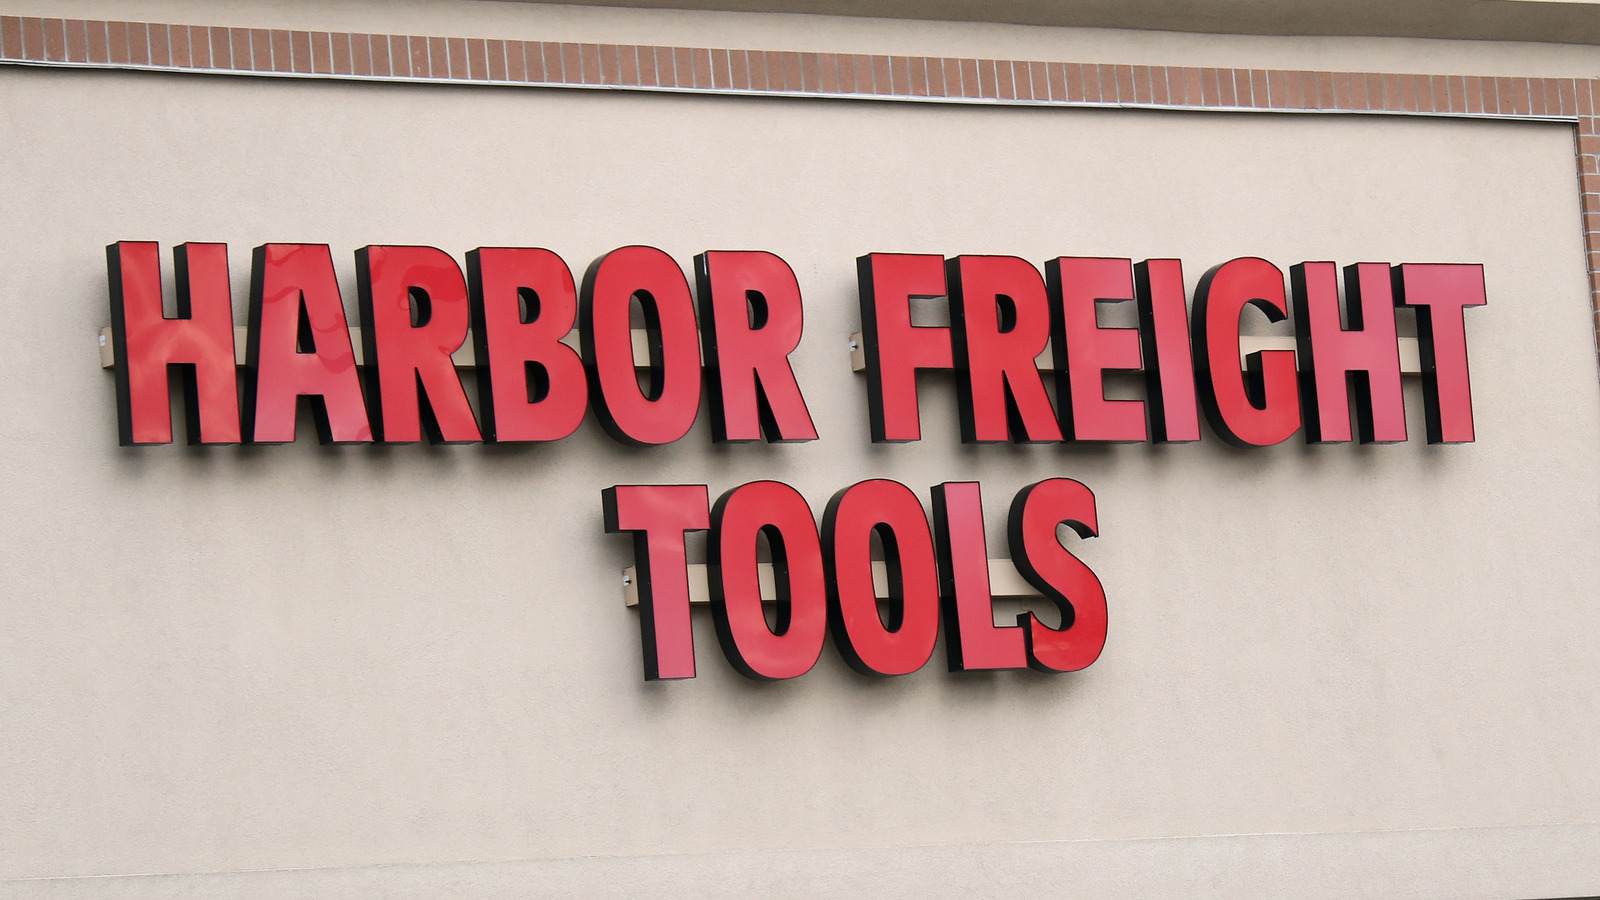 Las 5 mejores herramientas económicas que vale la pena comprar en Harbor Freight